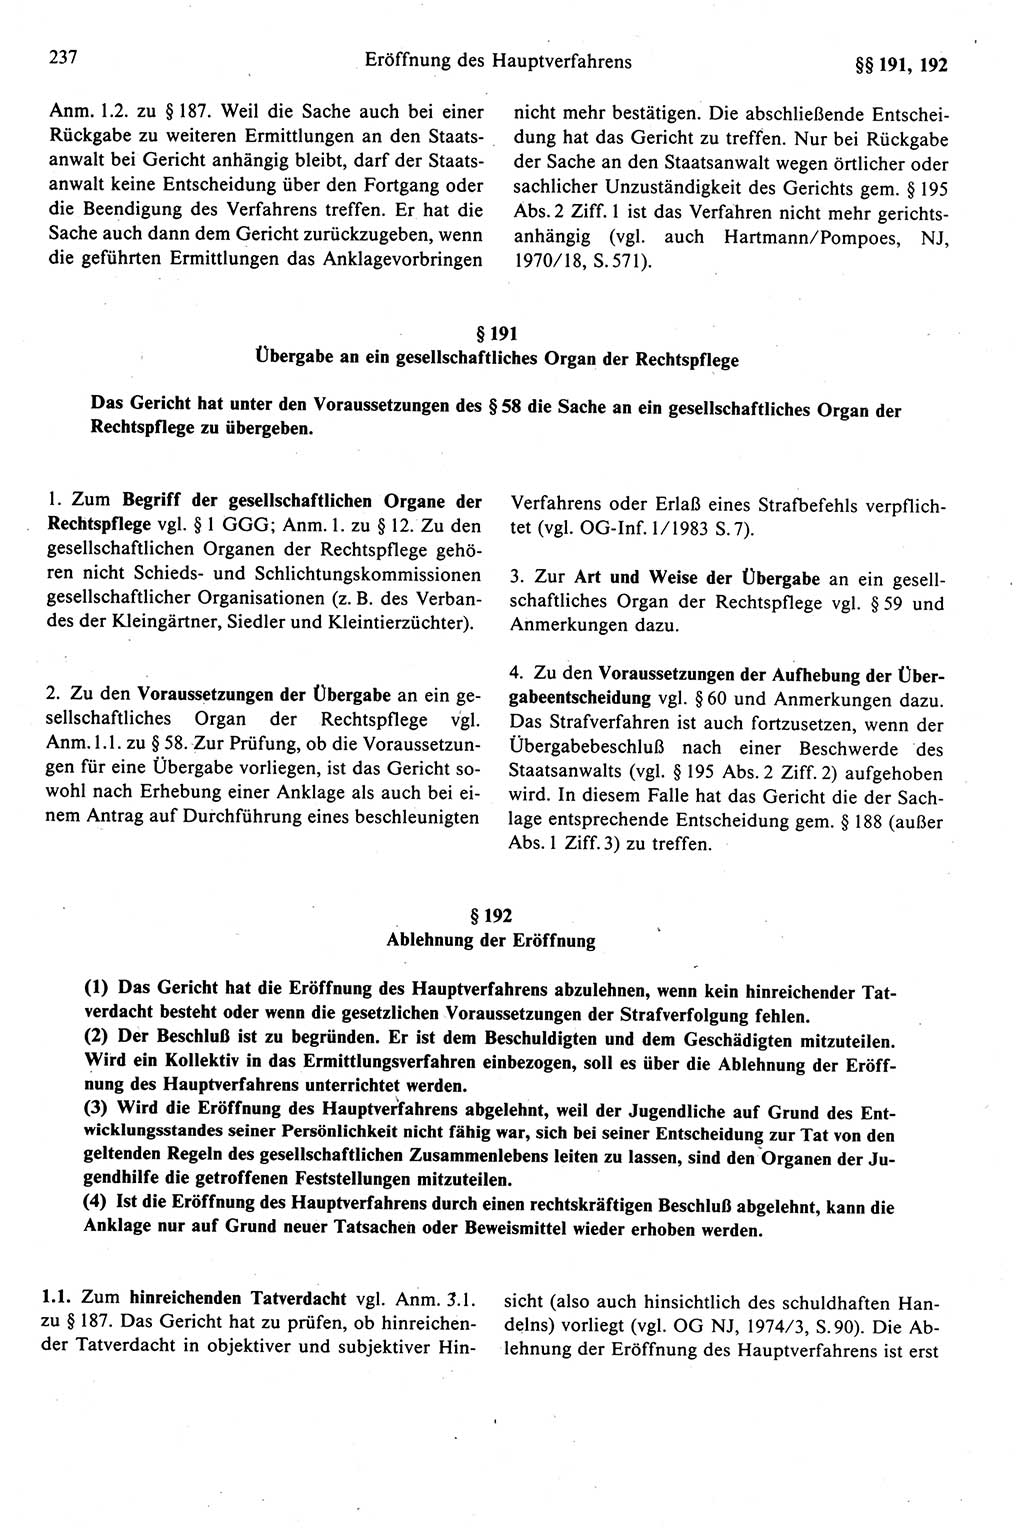 Strafprozeßrecht der DDR (Deutsche Demokratische Republik), Kommentar zur Strafprozeßordnung (StPO) 1989, Seite 237 (Strafprozeßr. DDR Komm. StPO 1989, S. 237)